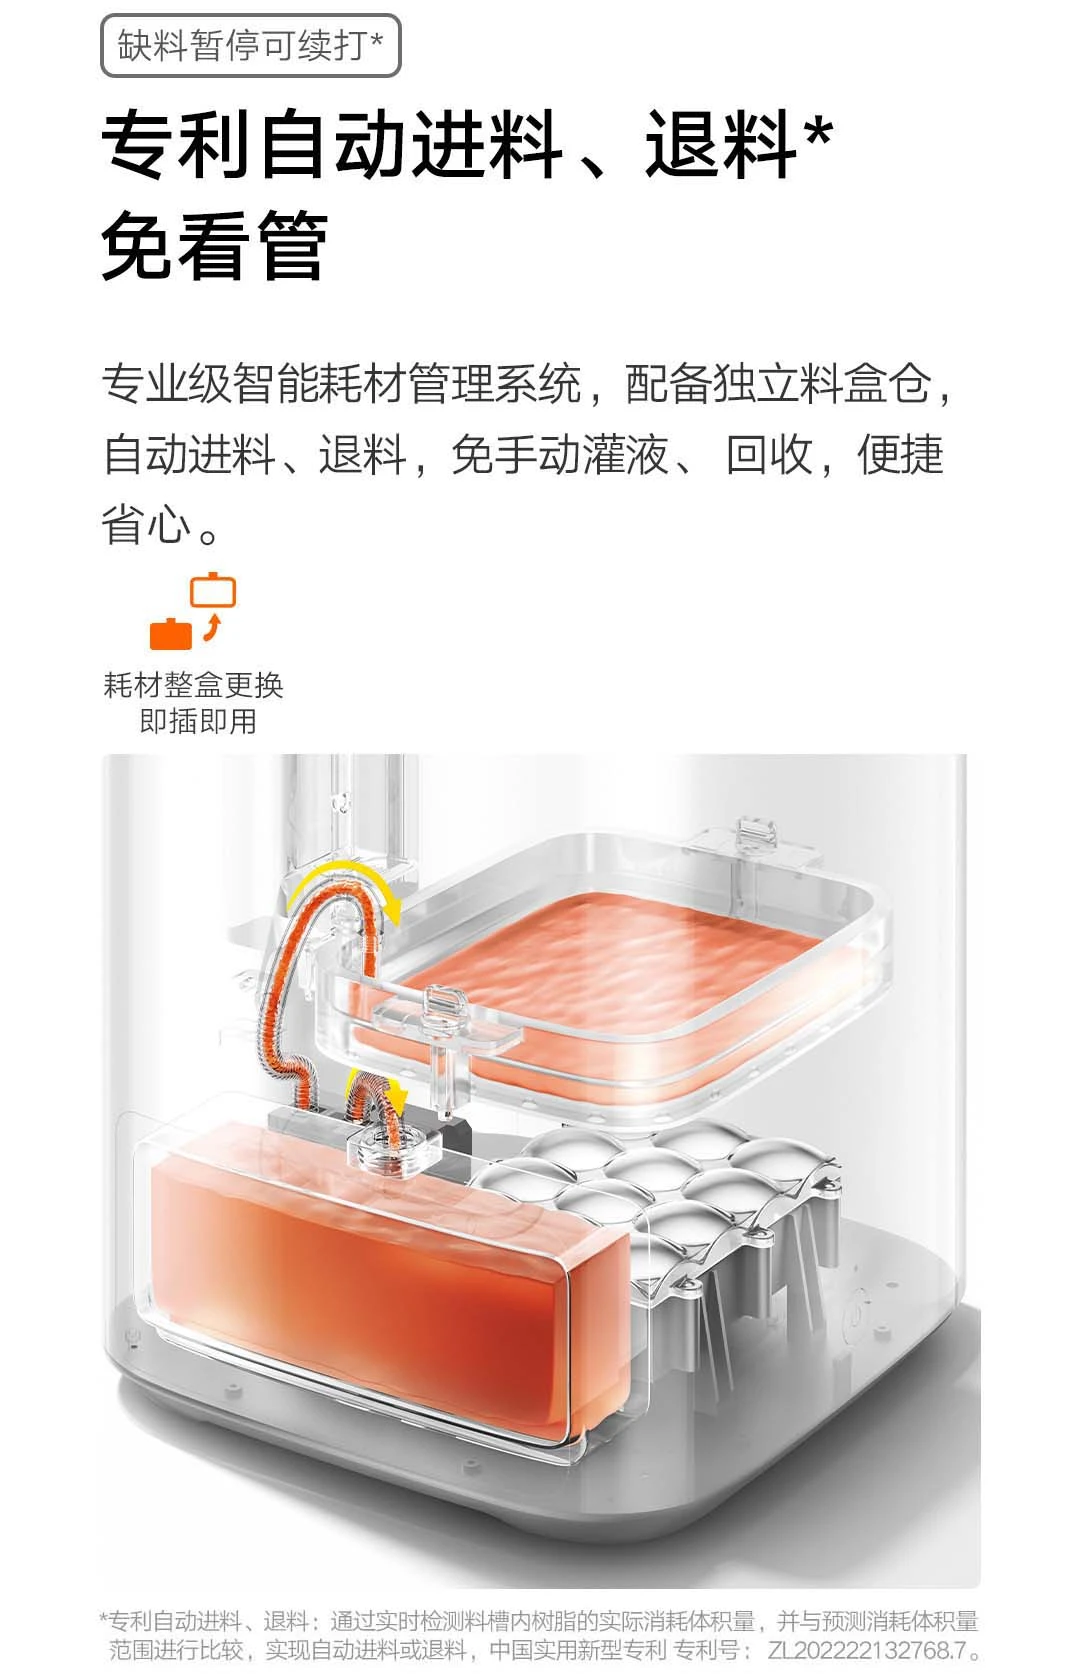 Xiaomi представила свой первый 3D-принтер (zcai9hzut4j5)